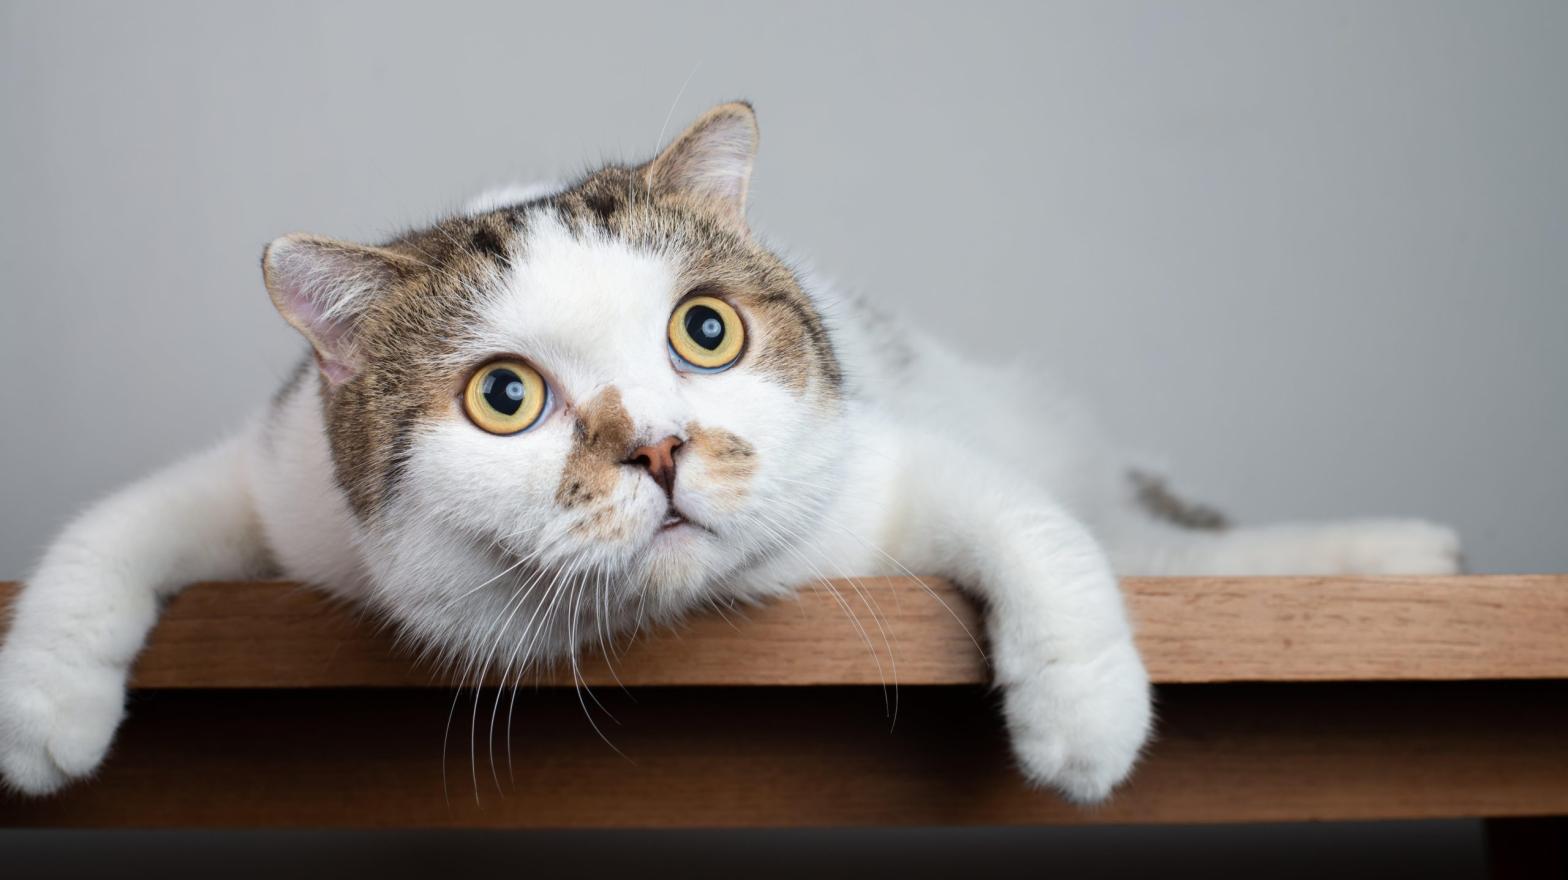 Photo: Cat Box, Shutterstock